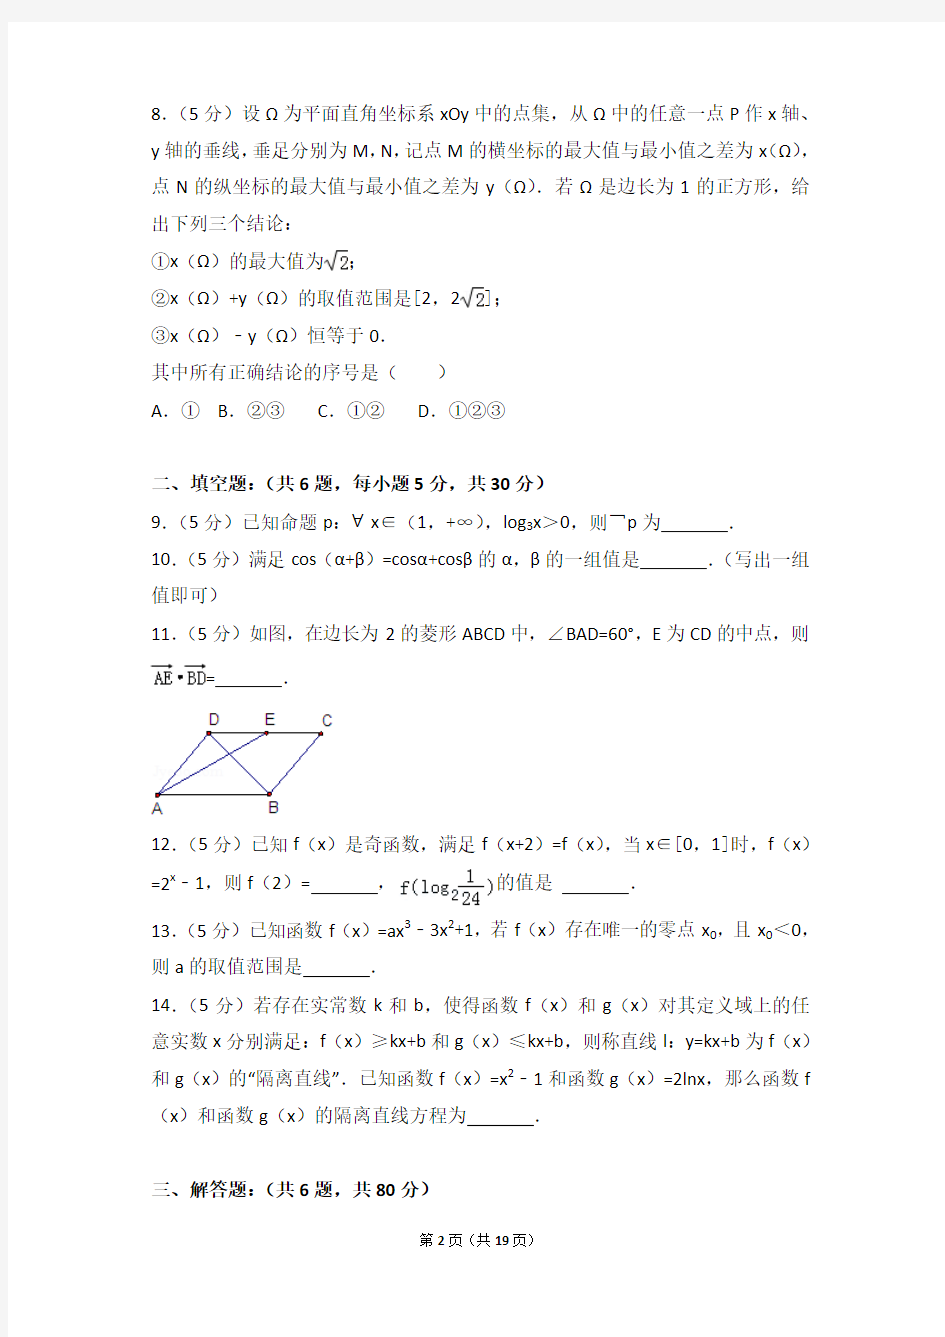 【真题】16年北京市东直门中学高三(上)数学期中试卷含答案(理科)